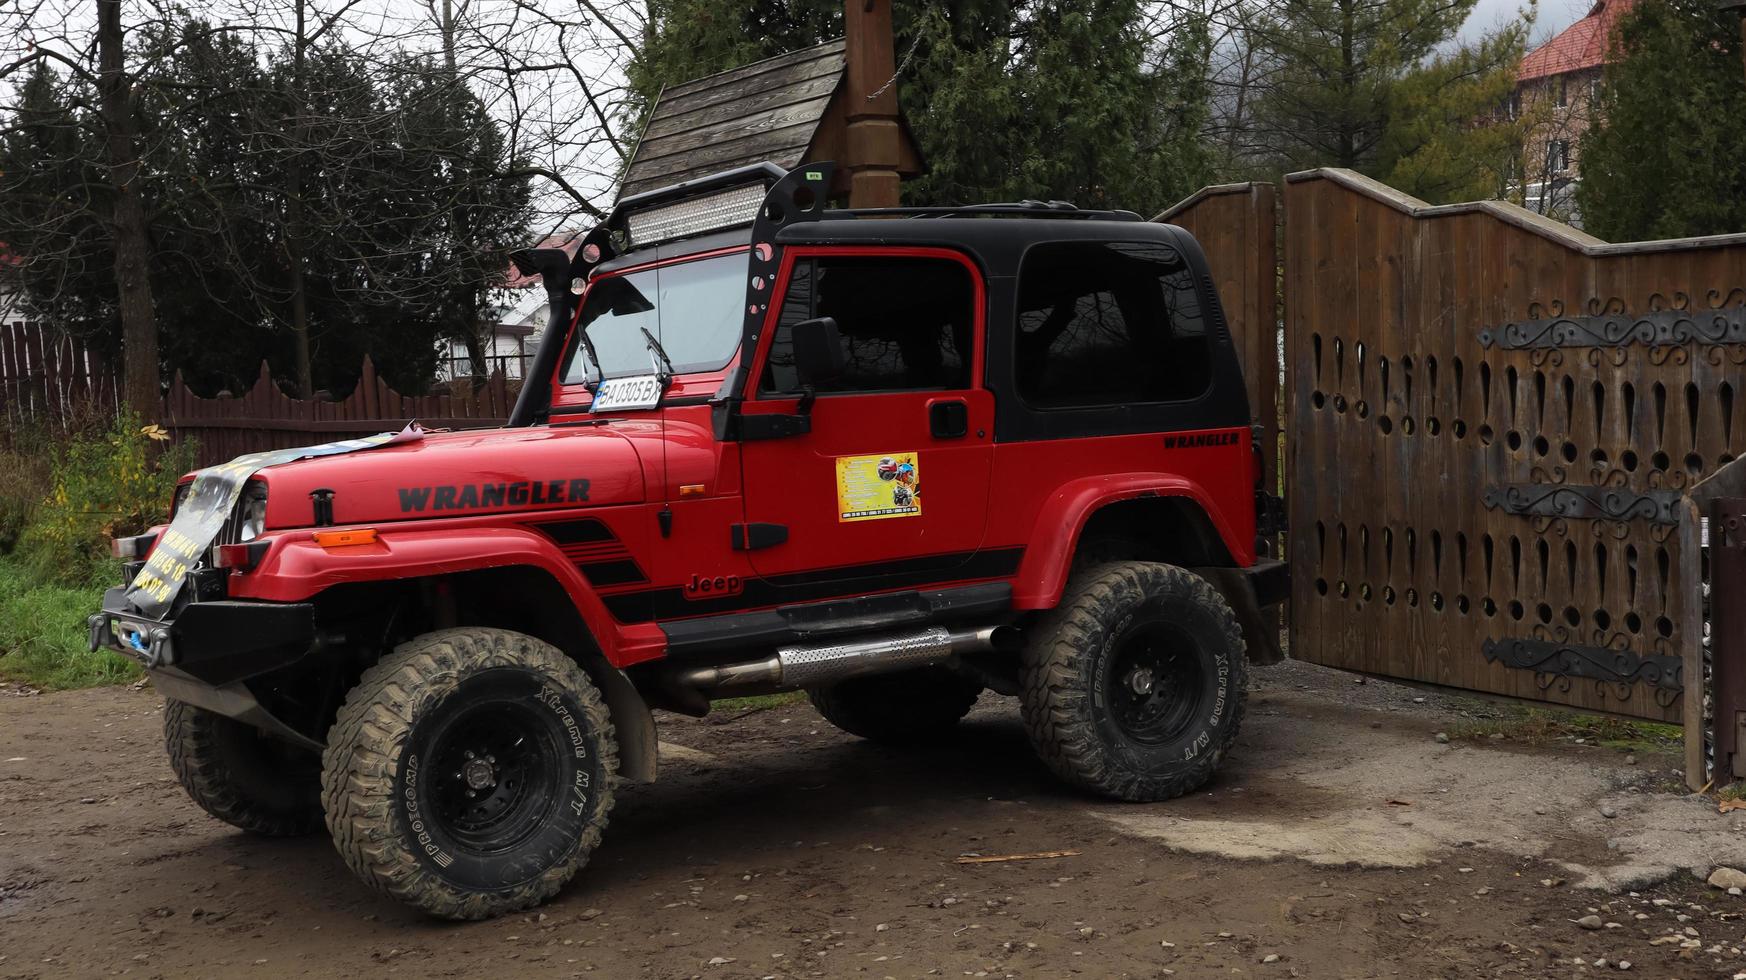 Ucrania, Yaremche - 20 de noviembre de 2019.Un jeep wrangler 4.0i v6 suv rojo está estacionado en una carretera rural cerca de una casa en un pequeño pueblo de los Cárpatos ucranianos. excursiones paseo en jeep de montaña. foto